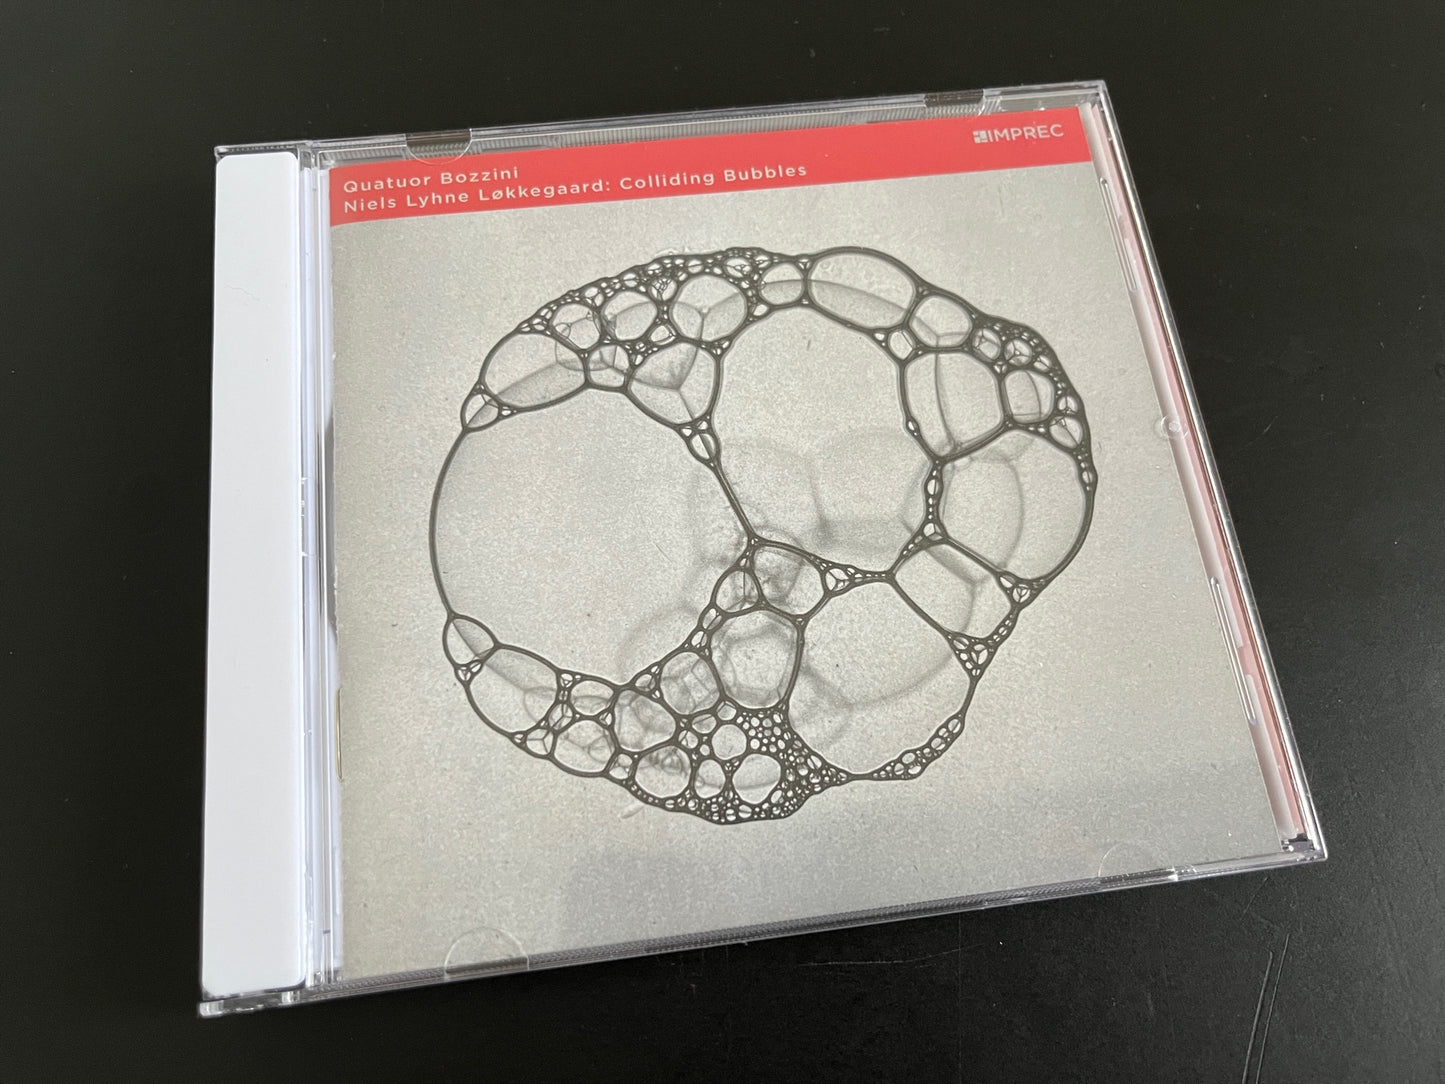 Niels Lyhne Løkkegaard & Quatuor Bozzini - Colliding Bubbles - CD